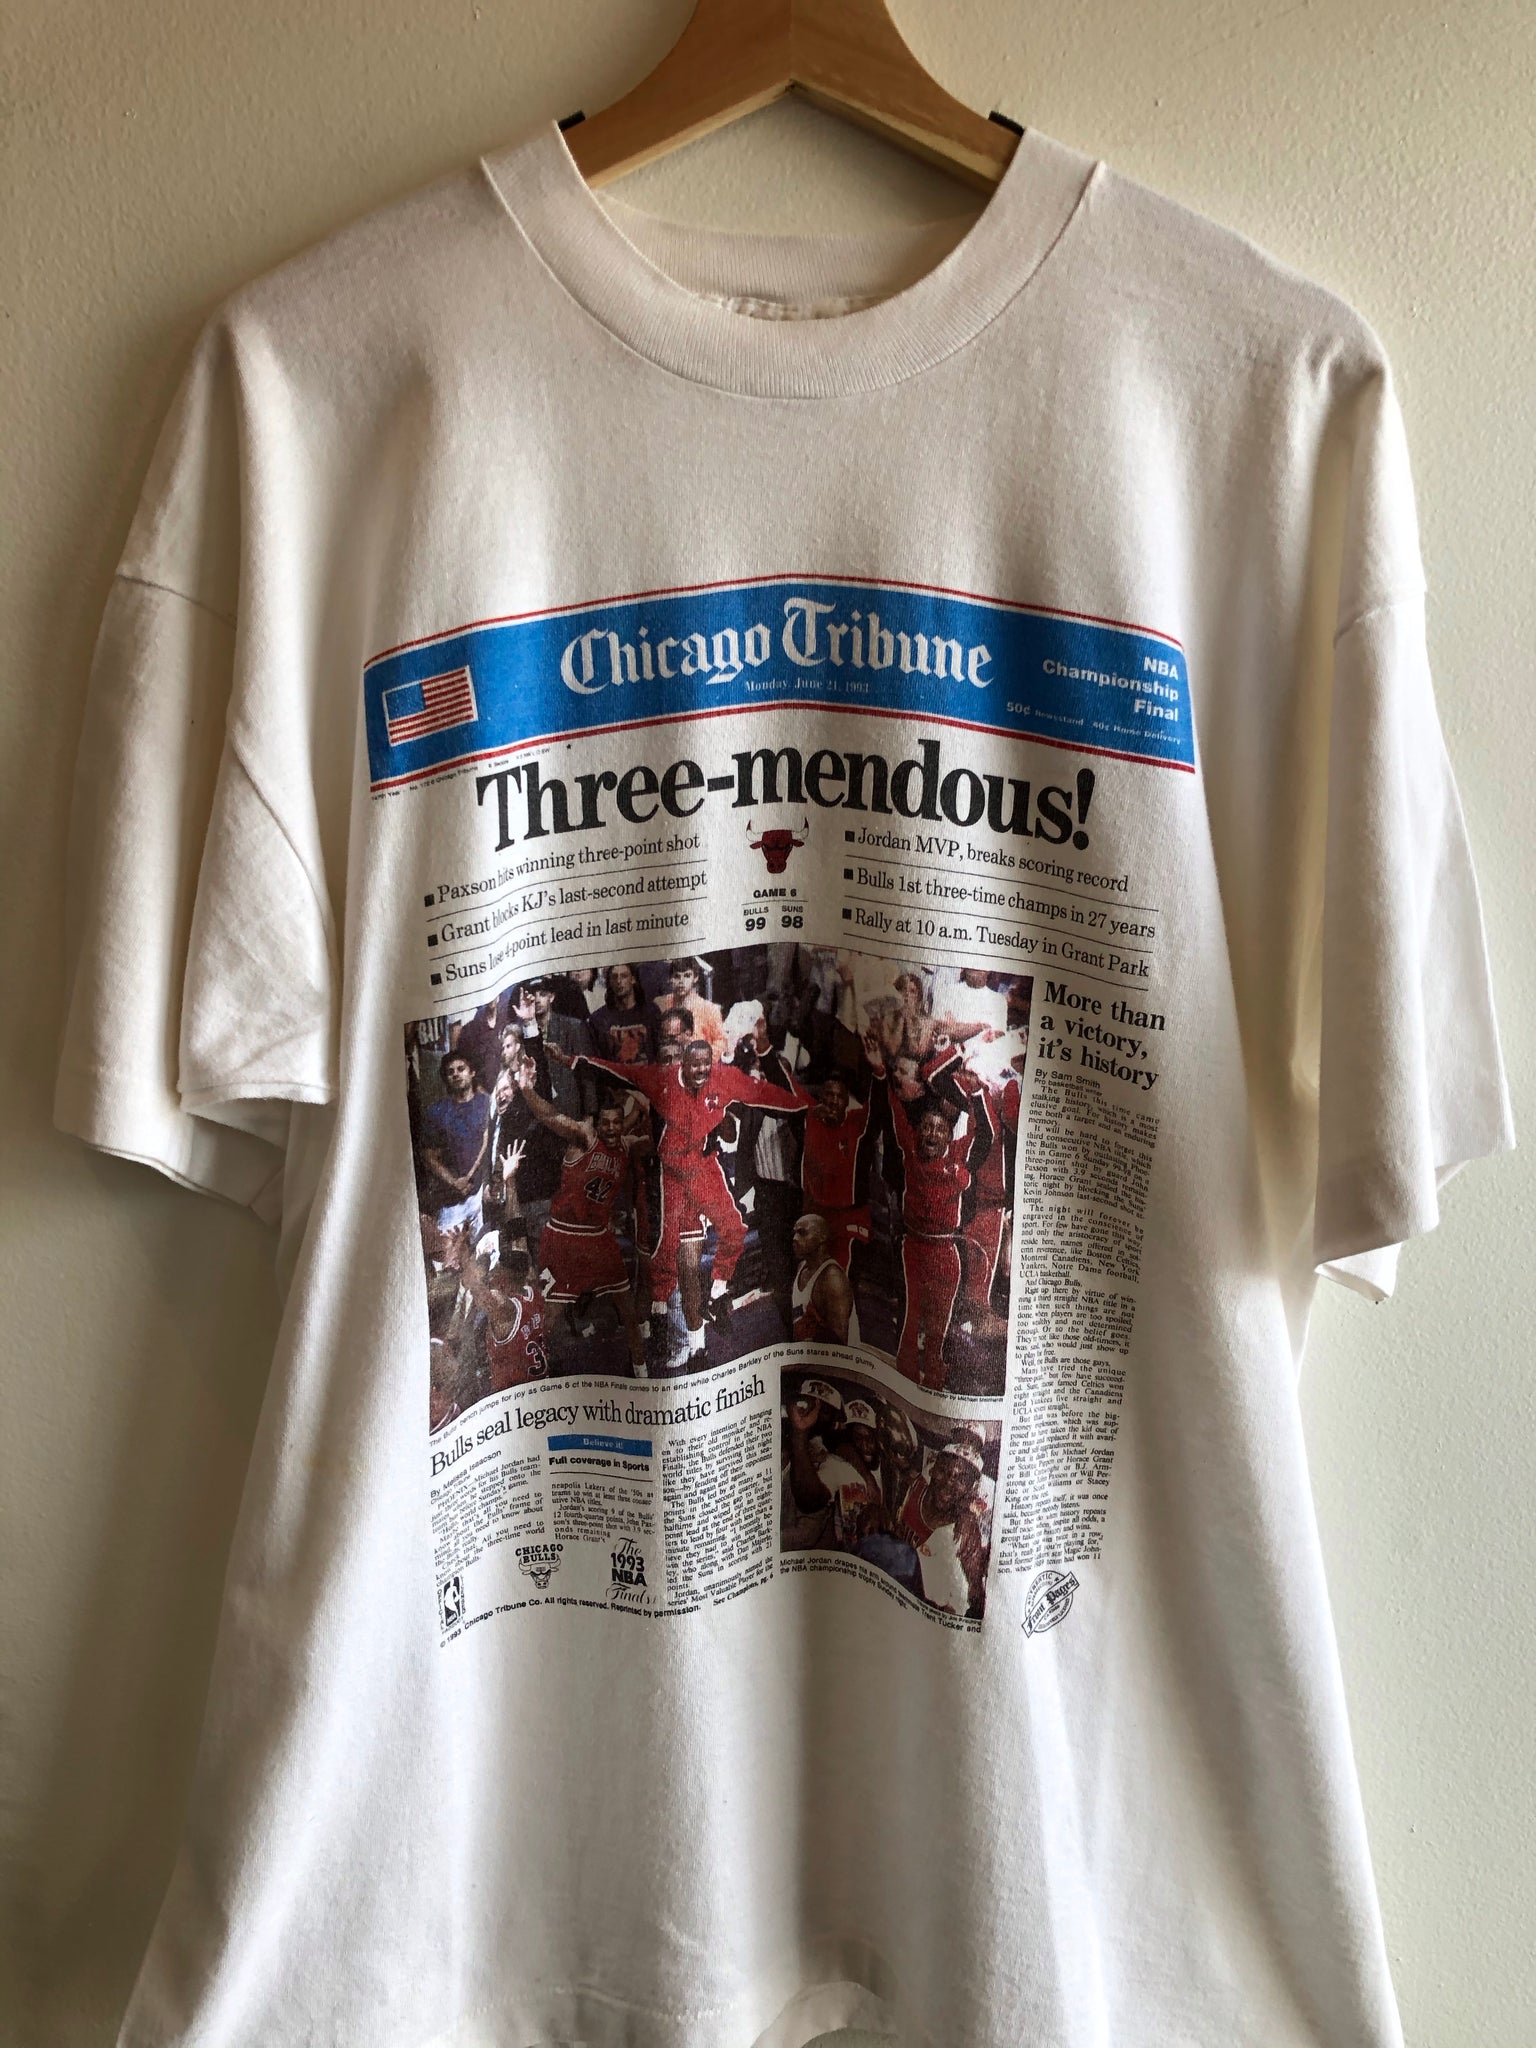 Chicago Bulls Three Peat t-shirt